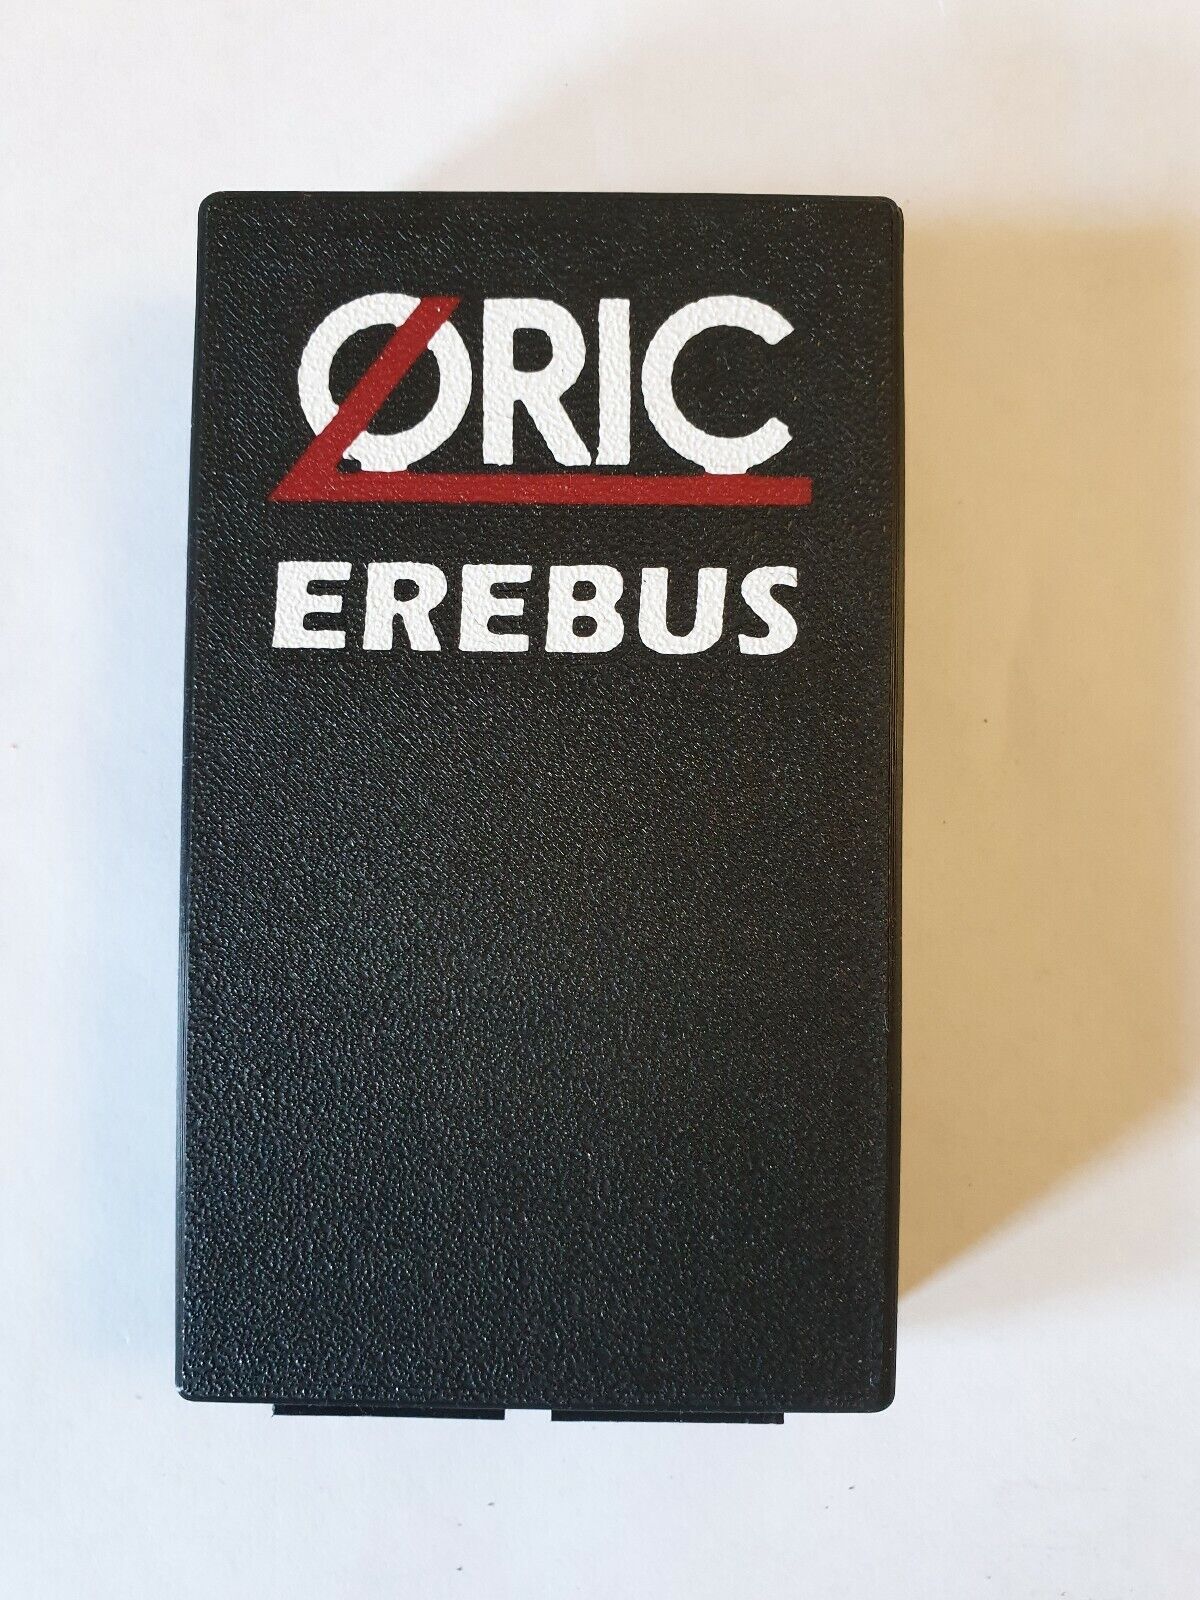 Erebus Oric Atmos sd card flash cart Oric1